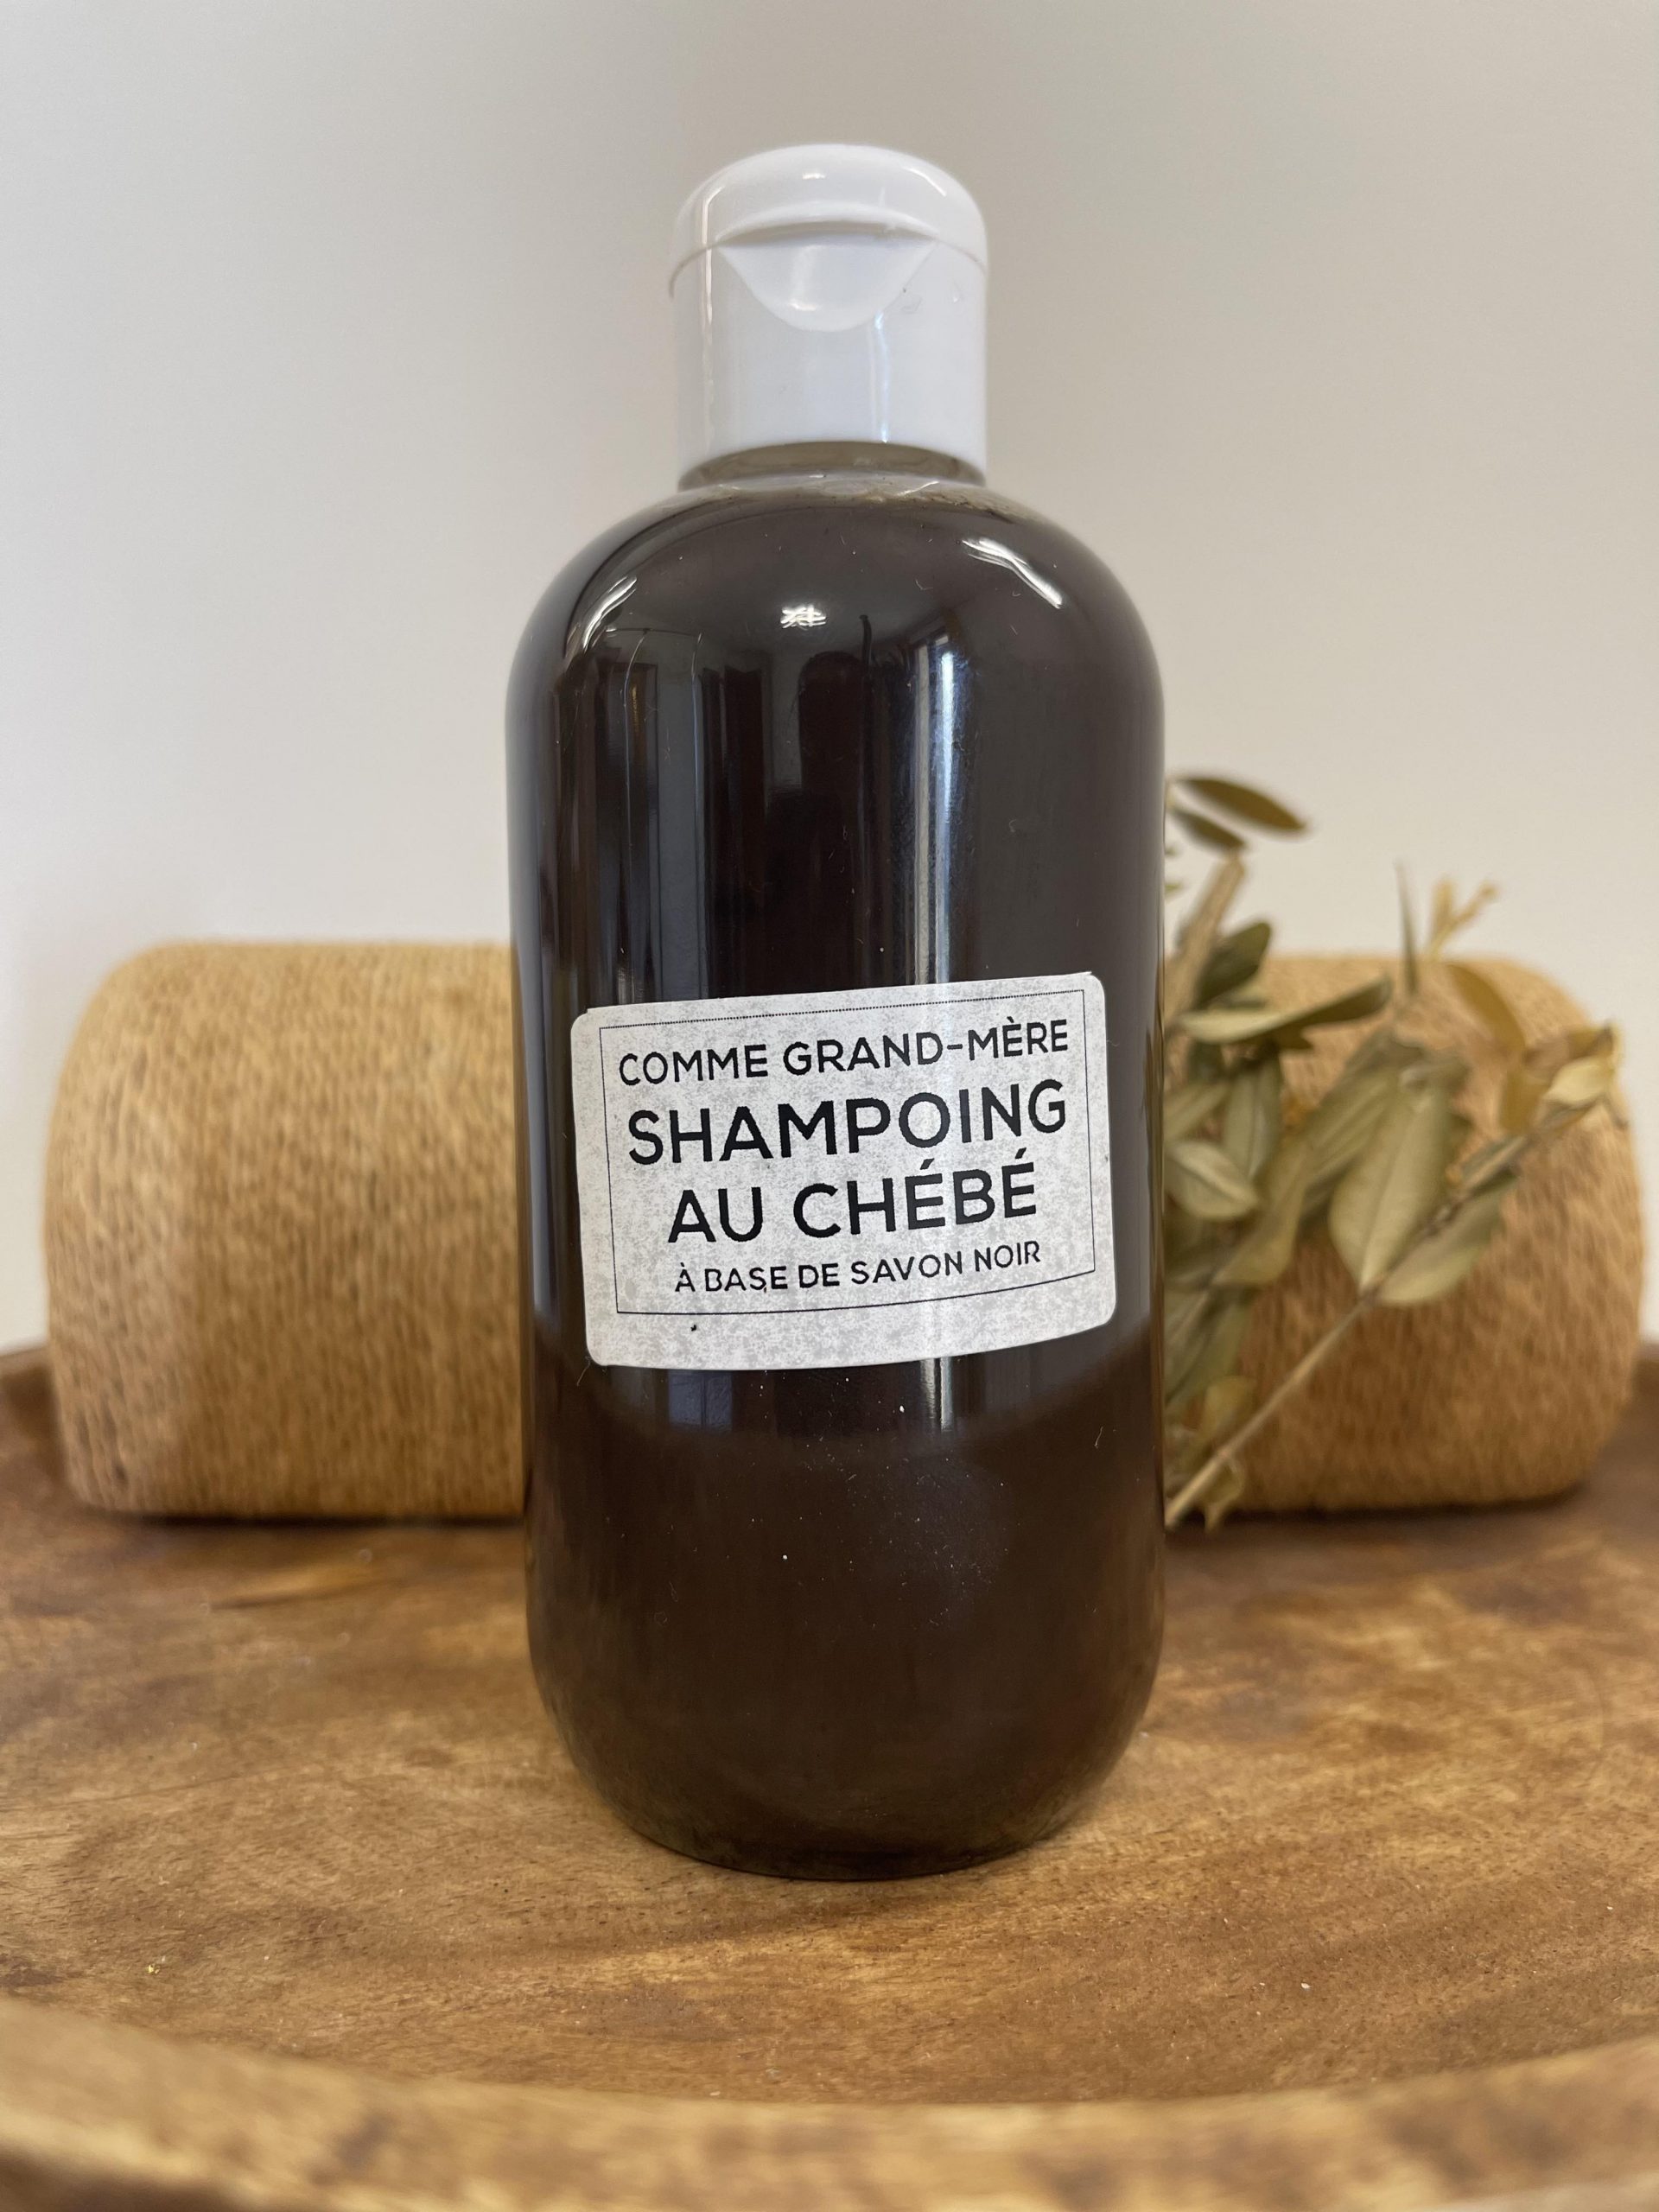 Le shampoing au chébé de Comme Grand Mère intègre le pouvoir du chébé ingrédient naturel connu pour ses propriétés stimulantes de la croissance des cheveux.